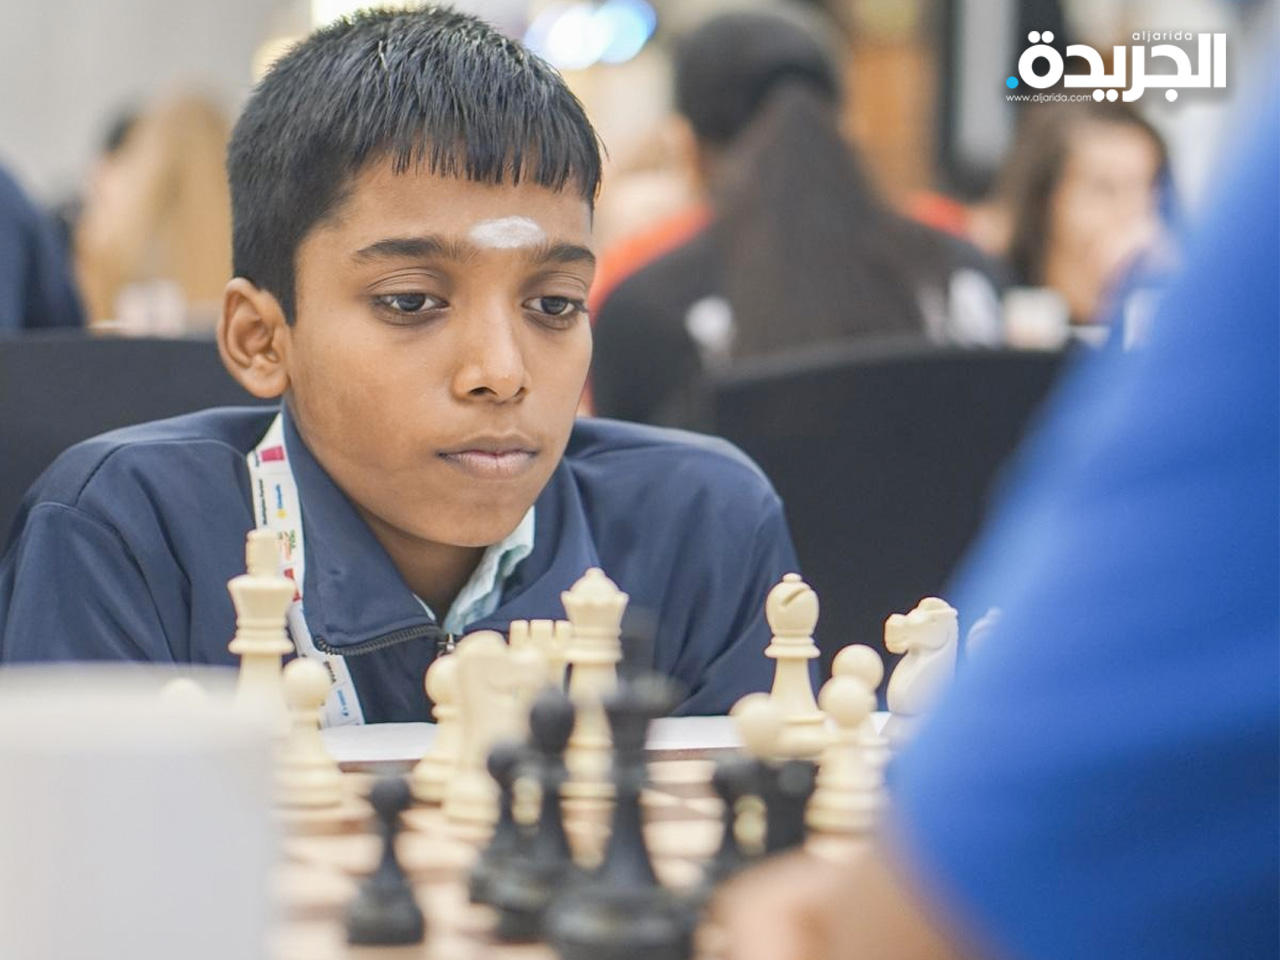 مراهق هندي يهزم بطل العالم في الشطرنج جريدة الجريدة الكويتية